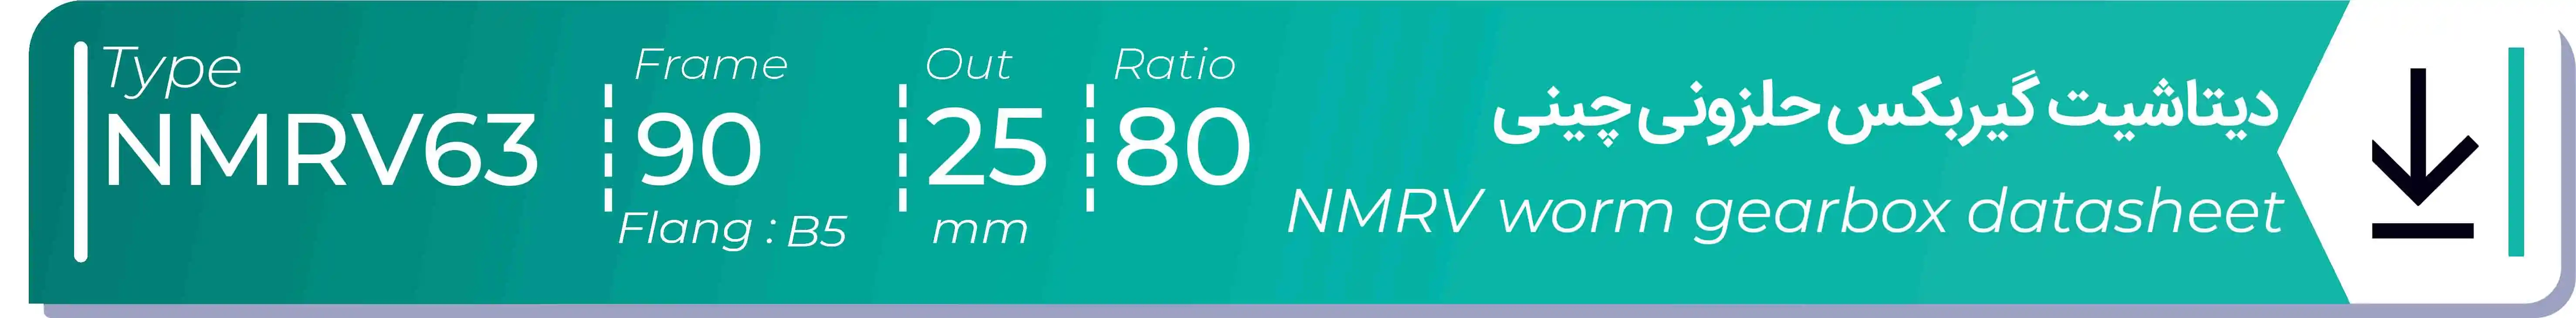  دیتاشیت و مشخصات فنی گیربکس حلزونی چینی   NMRV63  -  با خروجی 25- میلی متر و نسبت80 و فریم 90